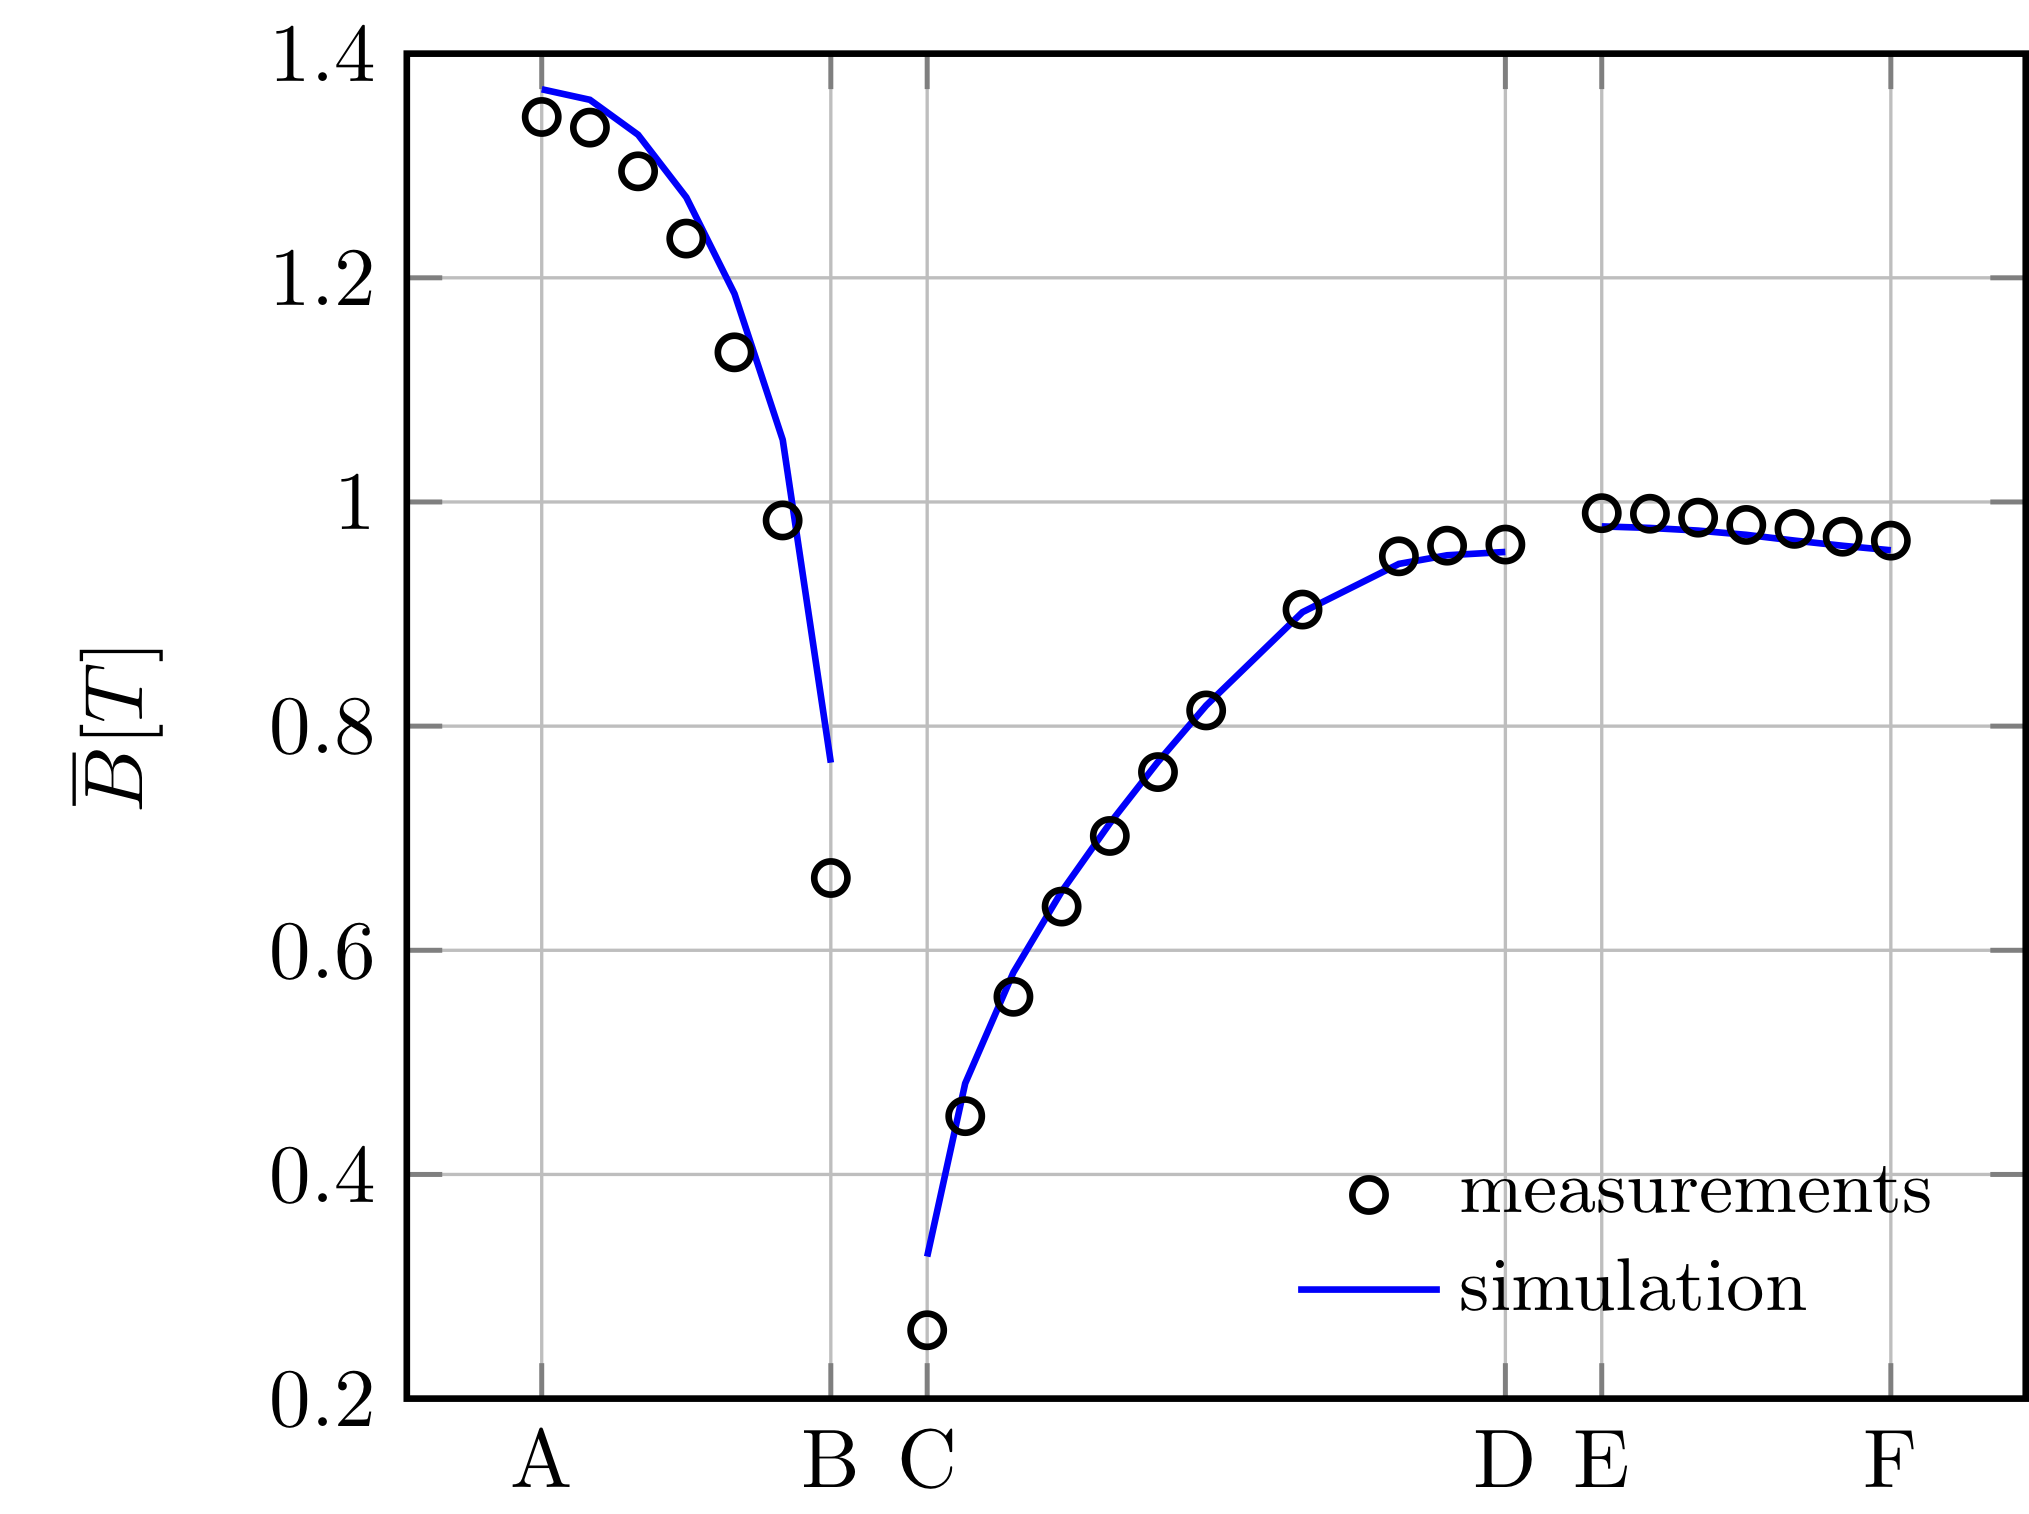 TEAM 13 - comparison with measurements